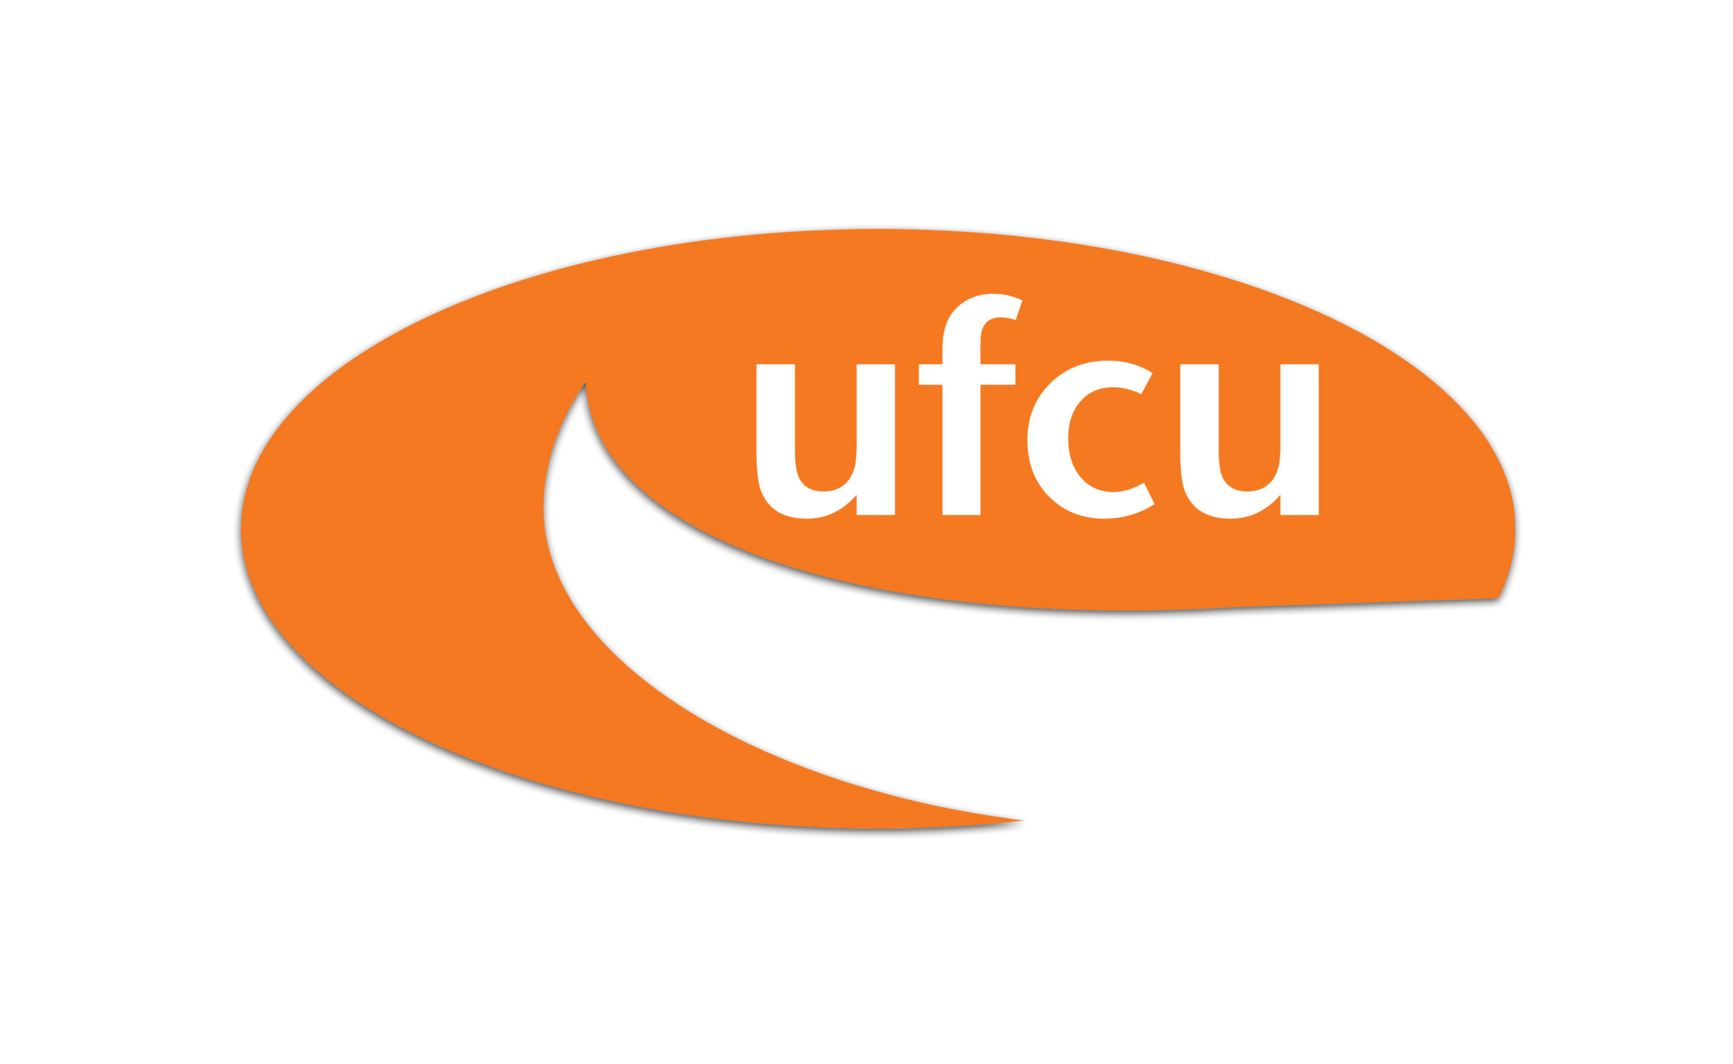 UFCU logo graphic